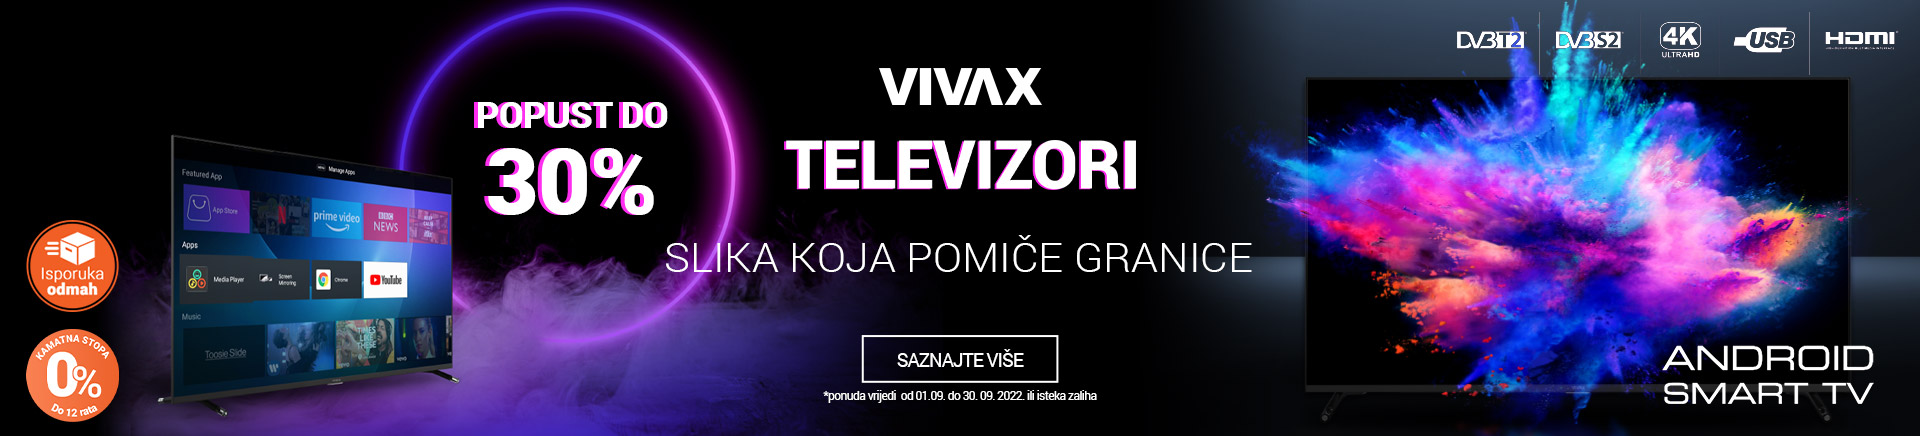 BA Vivax televizori slika koja pomiče granice MOBILE 380 X 436.jpg